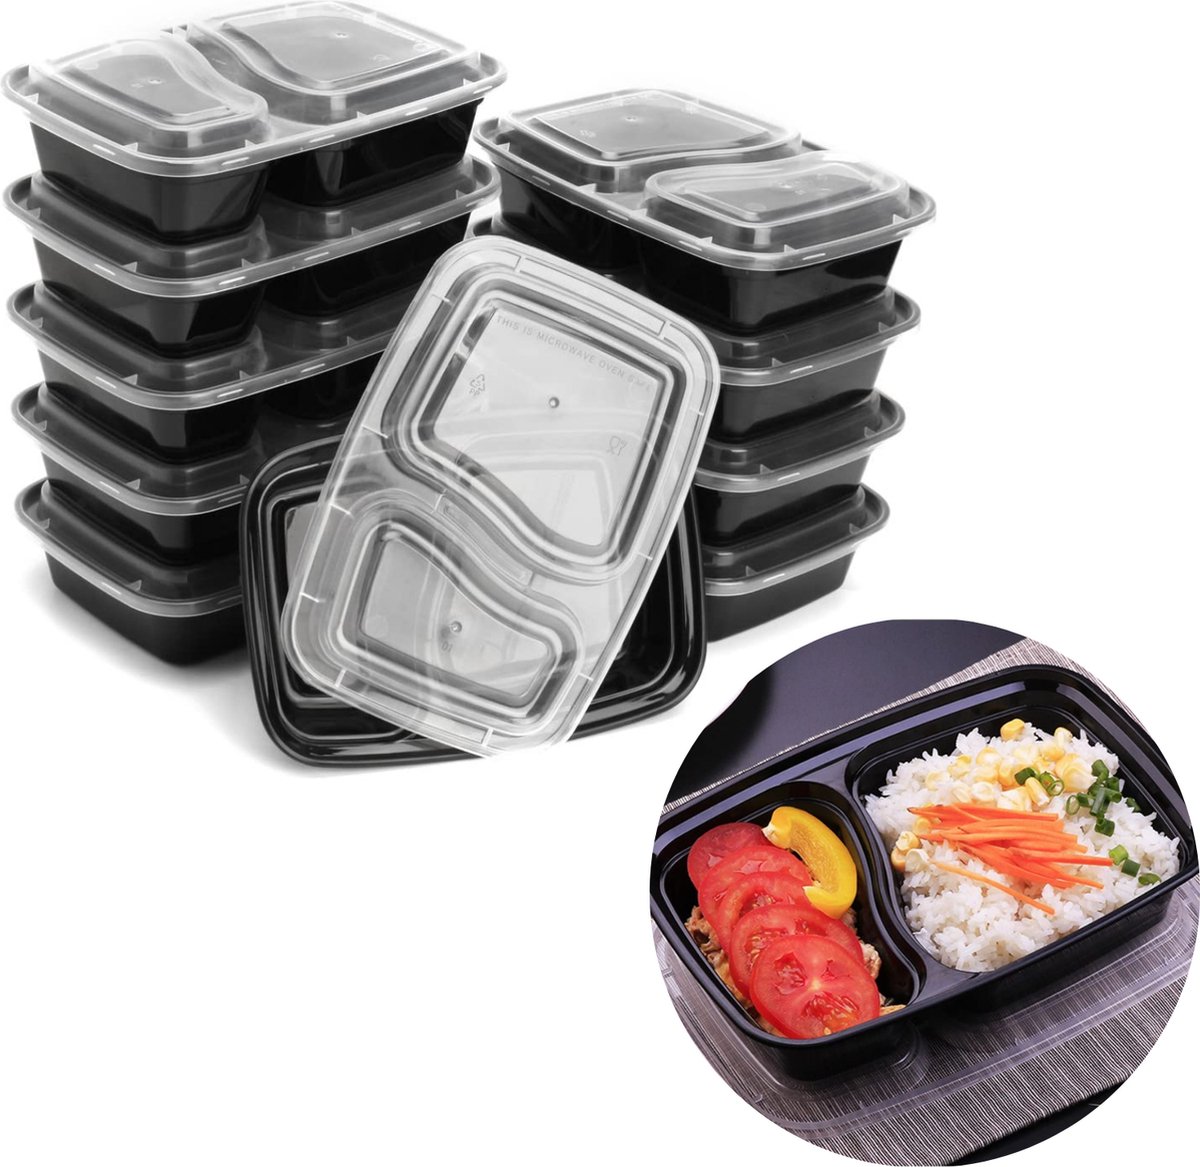 Cheqo® Vershoudbakjes Herbruikbaar - Meal Prep Bakjes - Diepvriesbakjes - Lunchbox - Vershouddoos - Plastic Bakjes - Magnetron Bakjes - Voedselcontainer - 10 Stuks met 2 Compartimenten